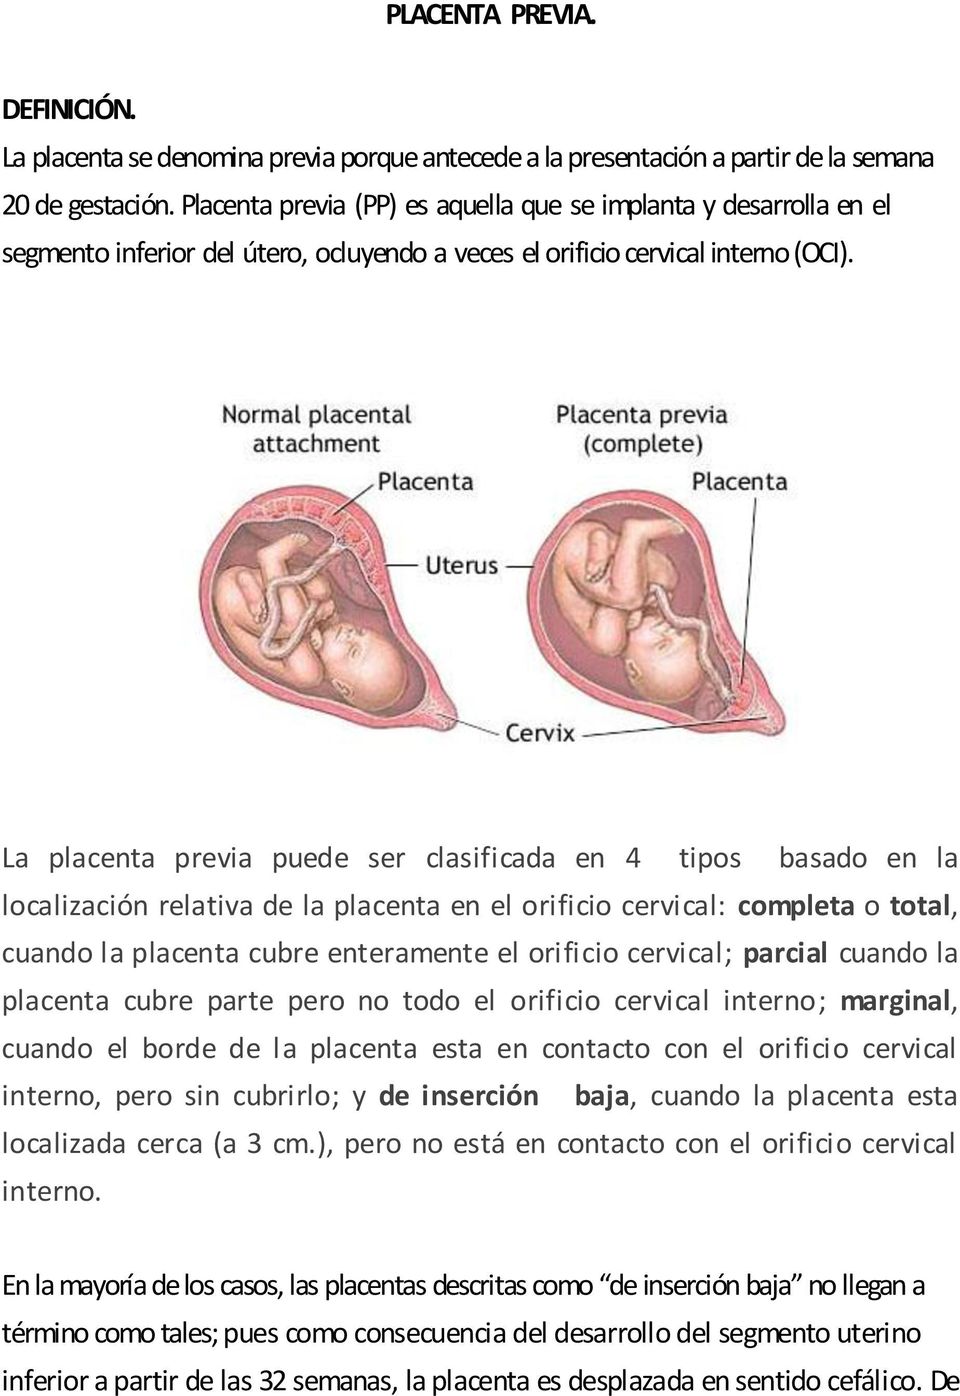 La placenta previa puede ser clasificada en 4 tipos basado en la localización relativa de la placenta en el orificio cervical: completa o total, cuando la placenta cubre enteramente el orificio